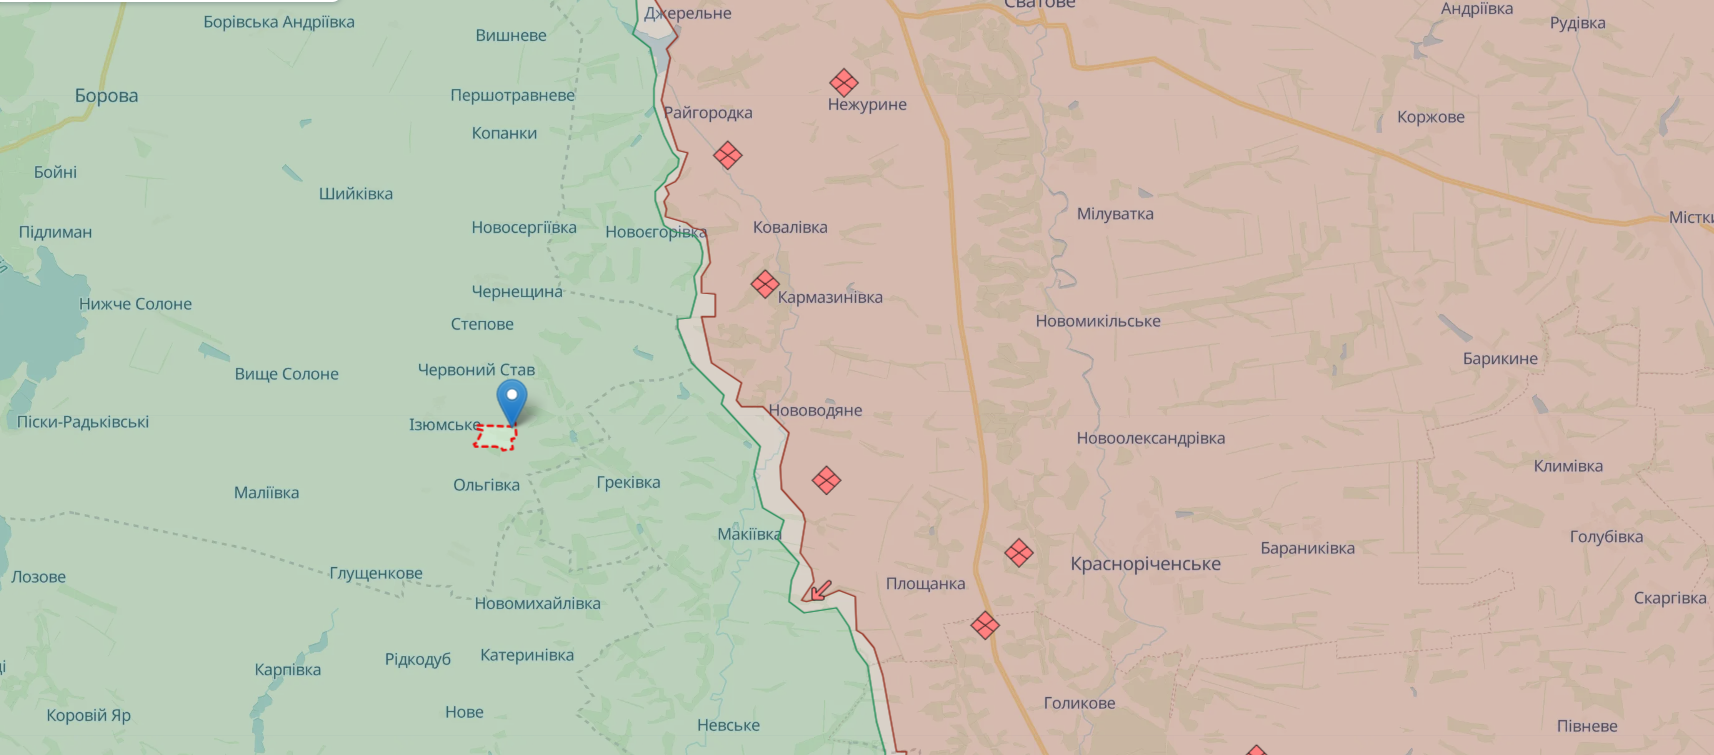 Враг активизировался на Северском и Кураховском направлениях, ВСУ сдерживают наступление на Покровском – Генштаб